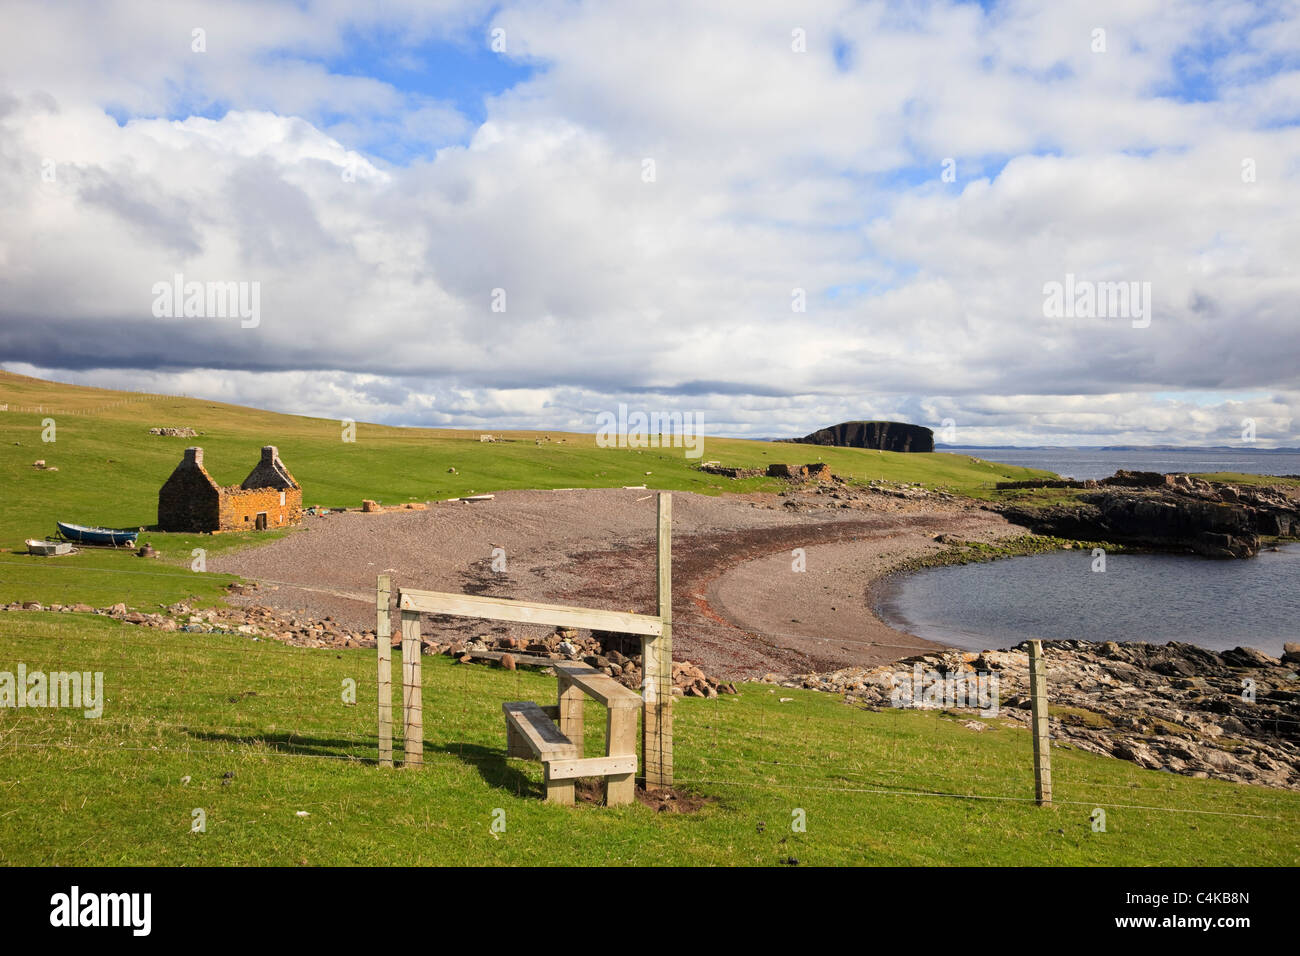 Haaf vecchia stazione di pesca con resti del XIX secolo lodges intorno a spiaggia. Stenness, Eshaness, isole Shetland, Scotland, Regno Unito Foto Stock